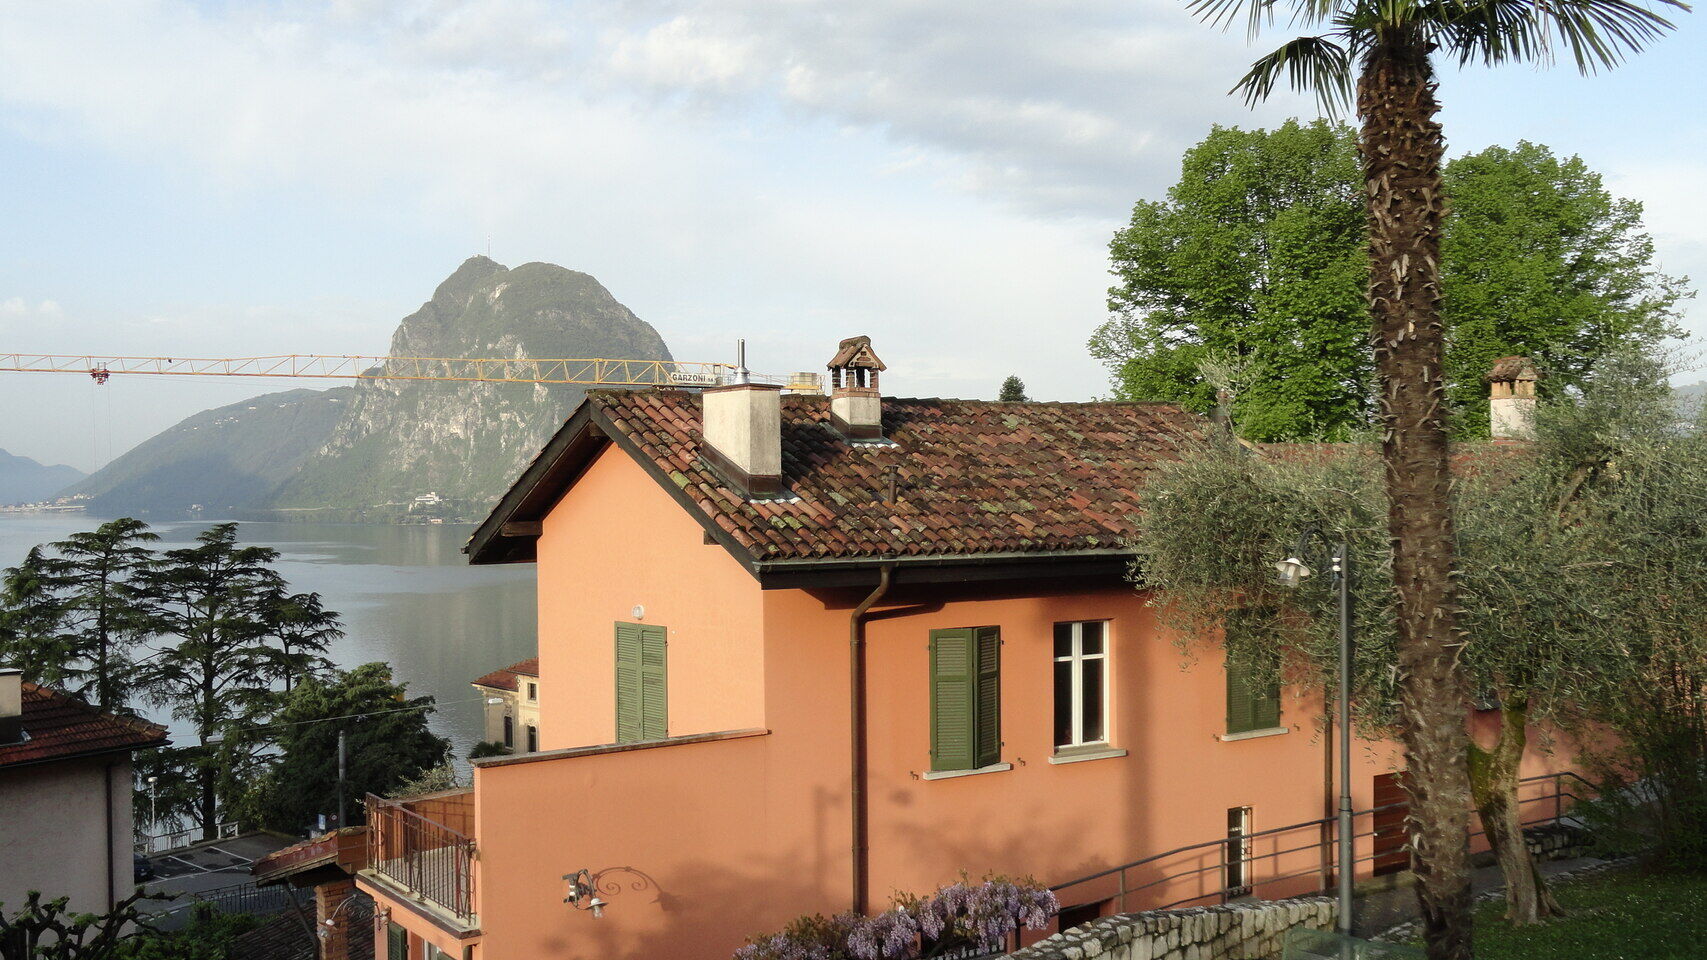 İnsan ve doğa bilimleri: Ticino Kantonu'ndaki Lugano Belediyesi sınırları içinde, Castagnola'da bulunan Casa Carla Cattaneo: Kendine yeni iddialı hedefler belirleyen IBSA Bilimsel Araştırma Vakfı'na ev sahipliği yapacak